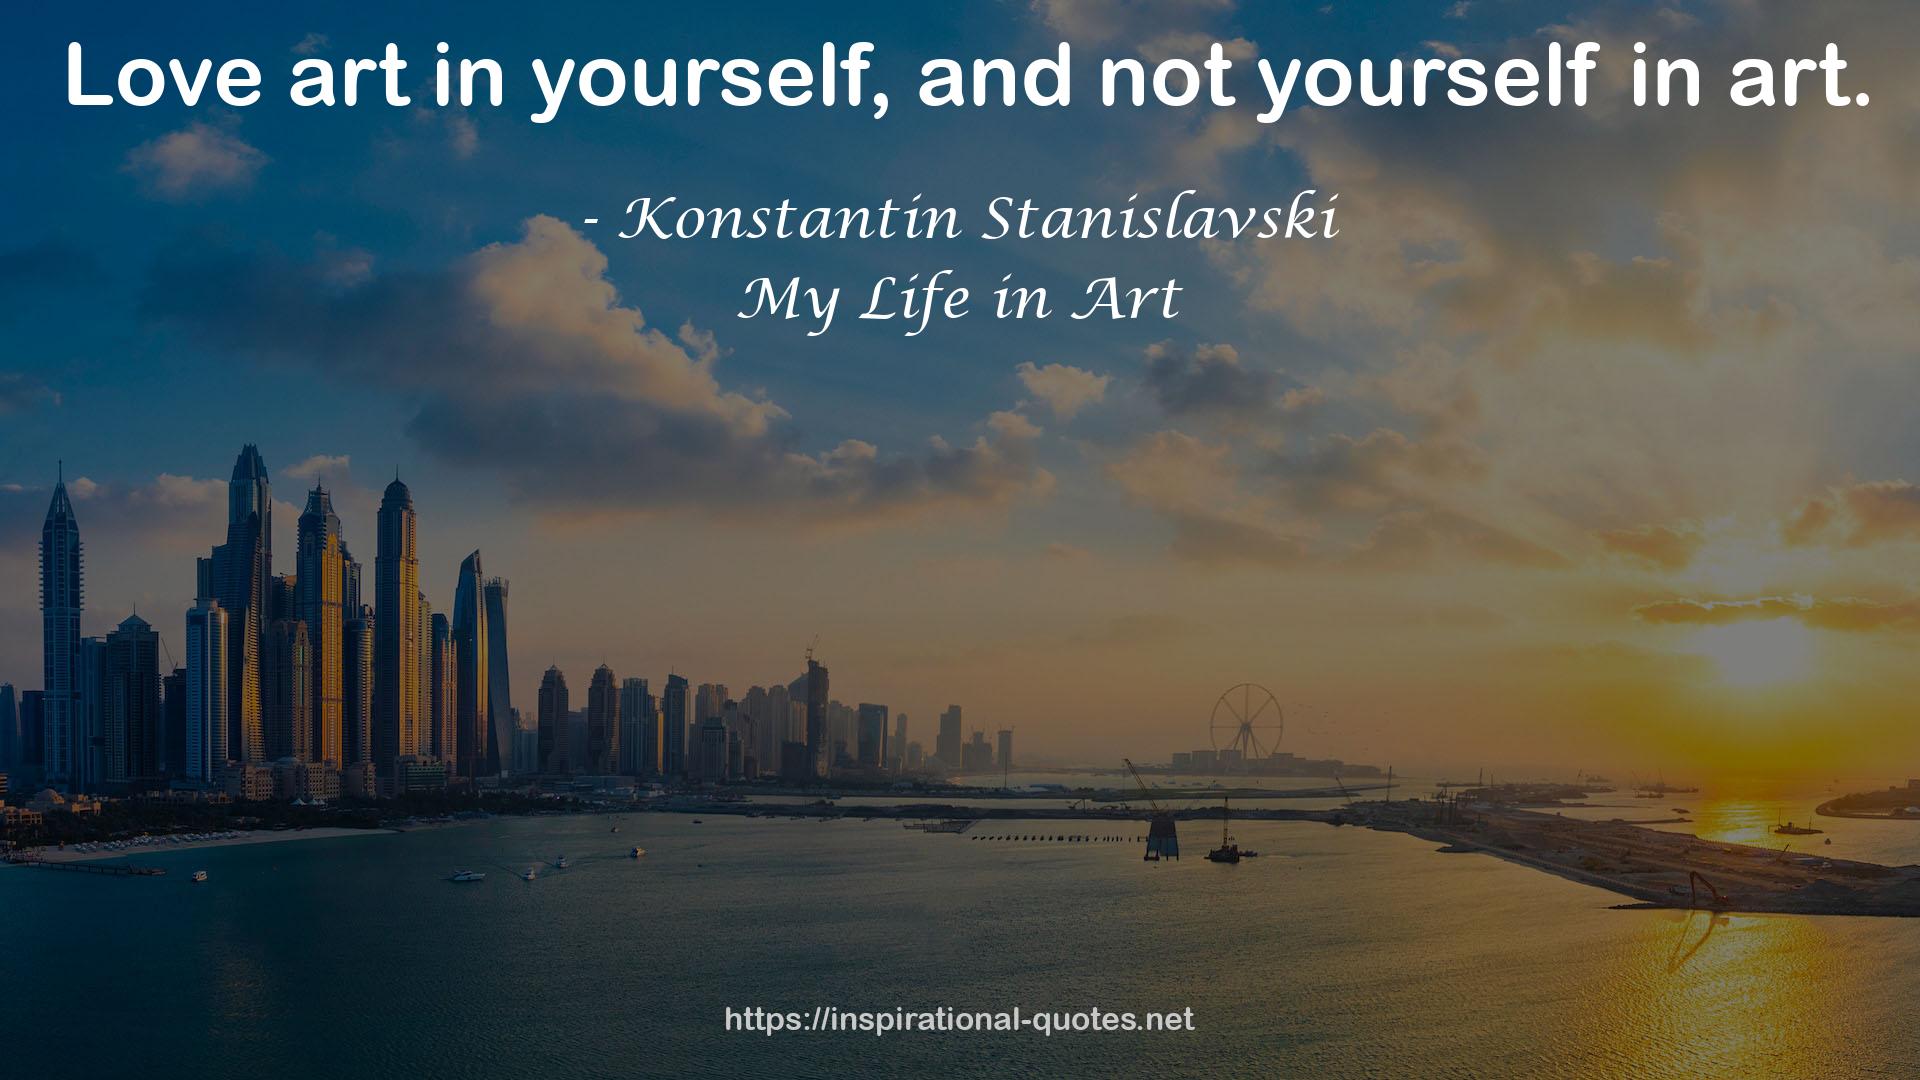 Konstantin Stanislavski QUOTES